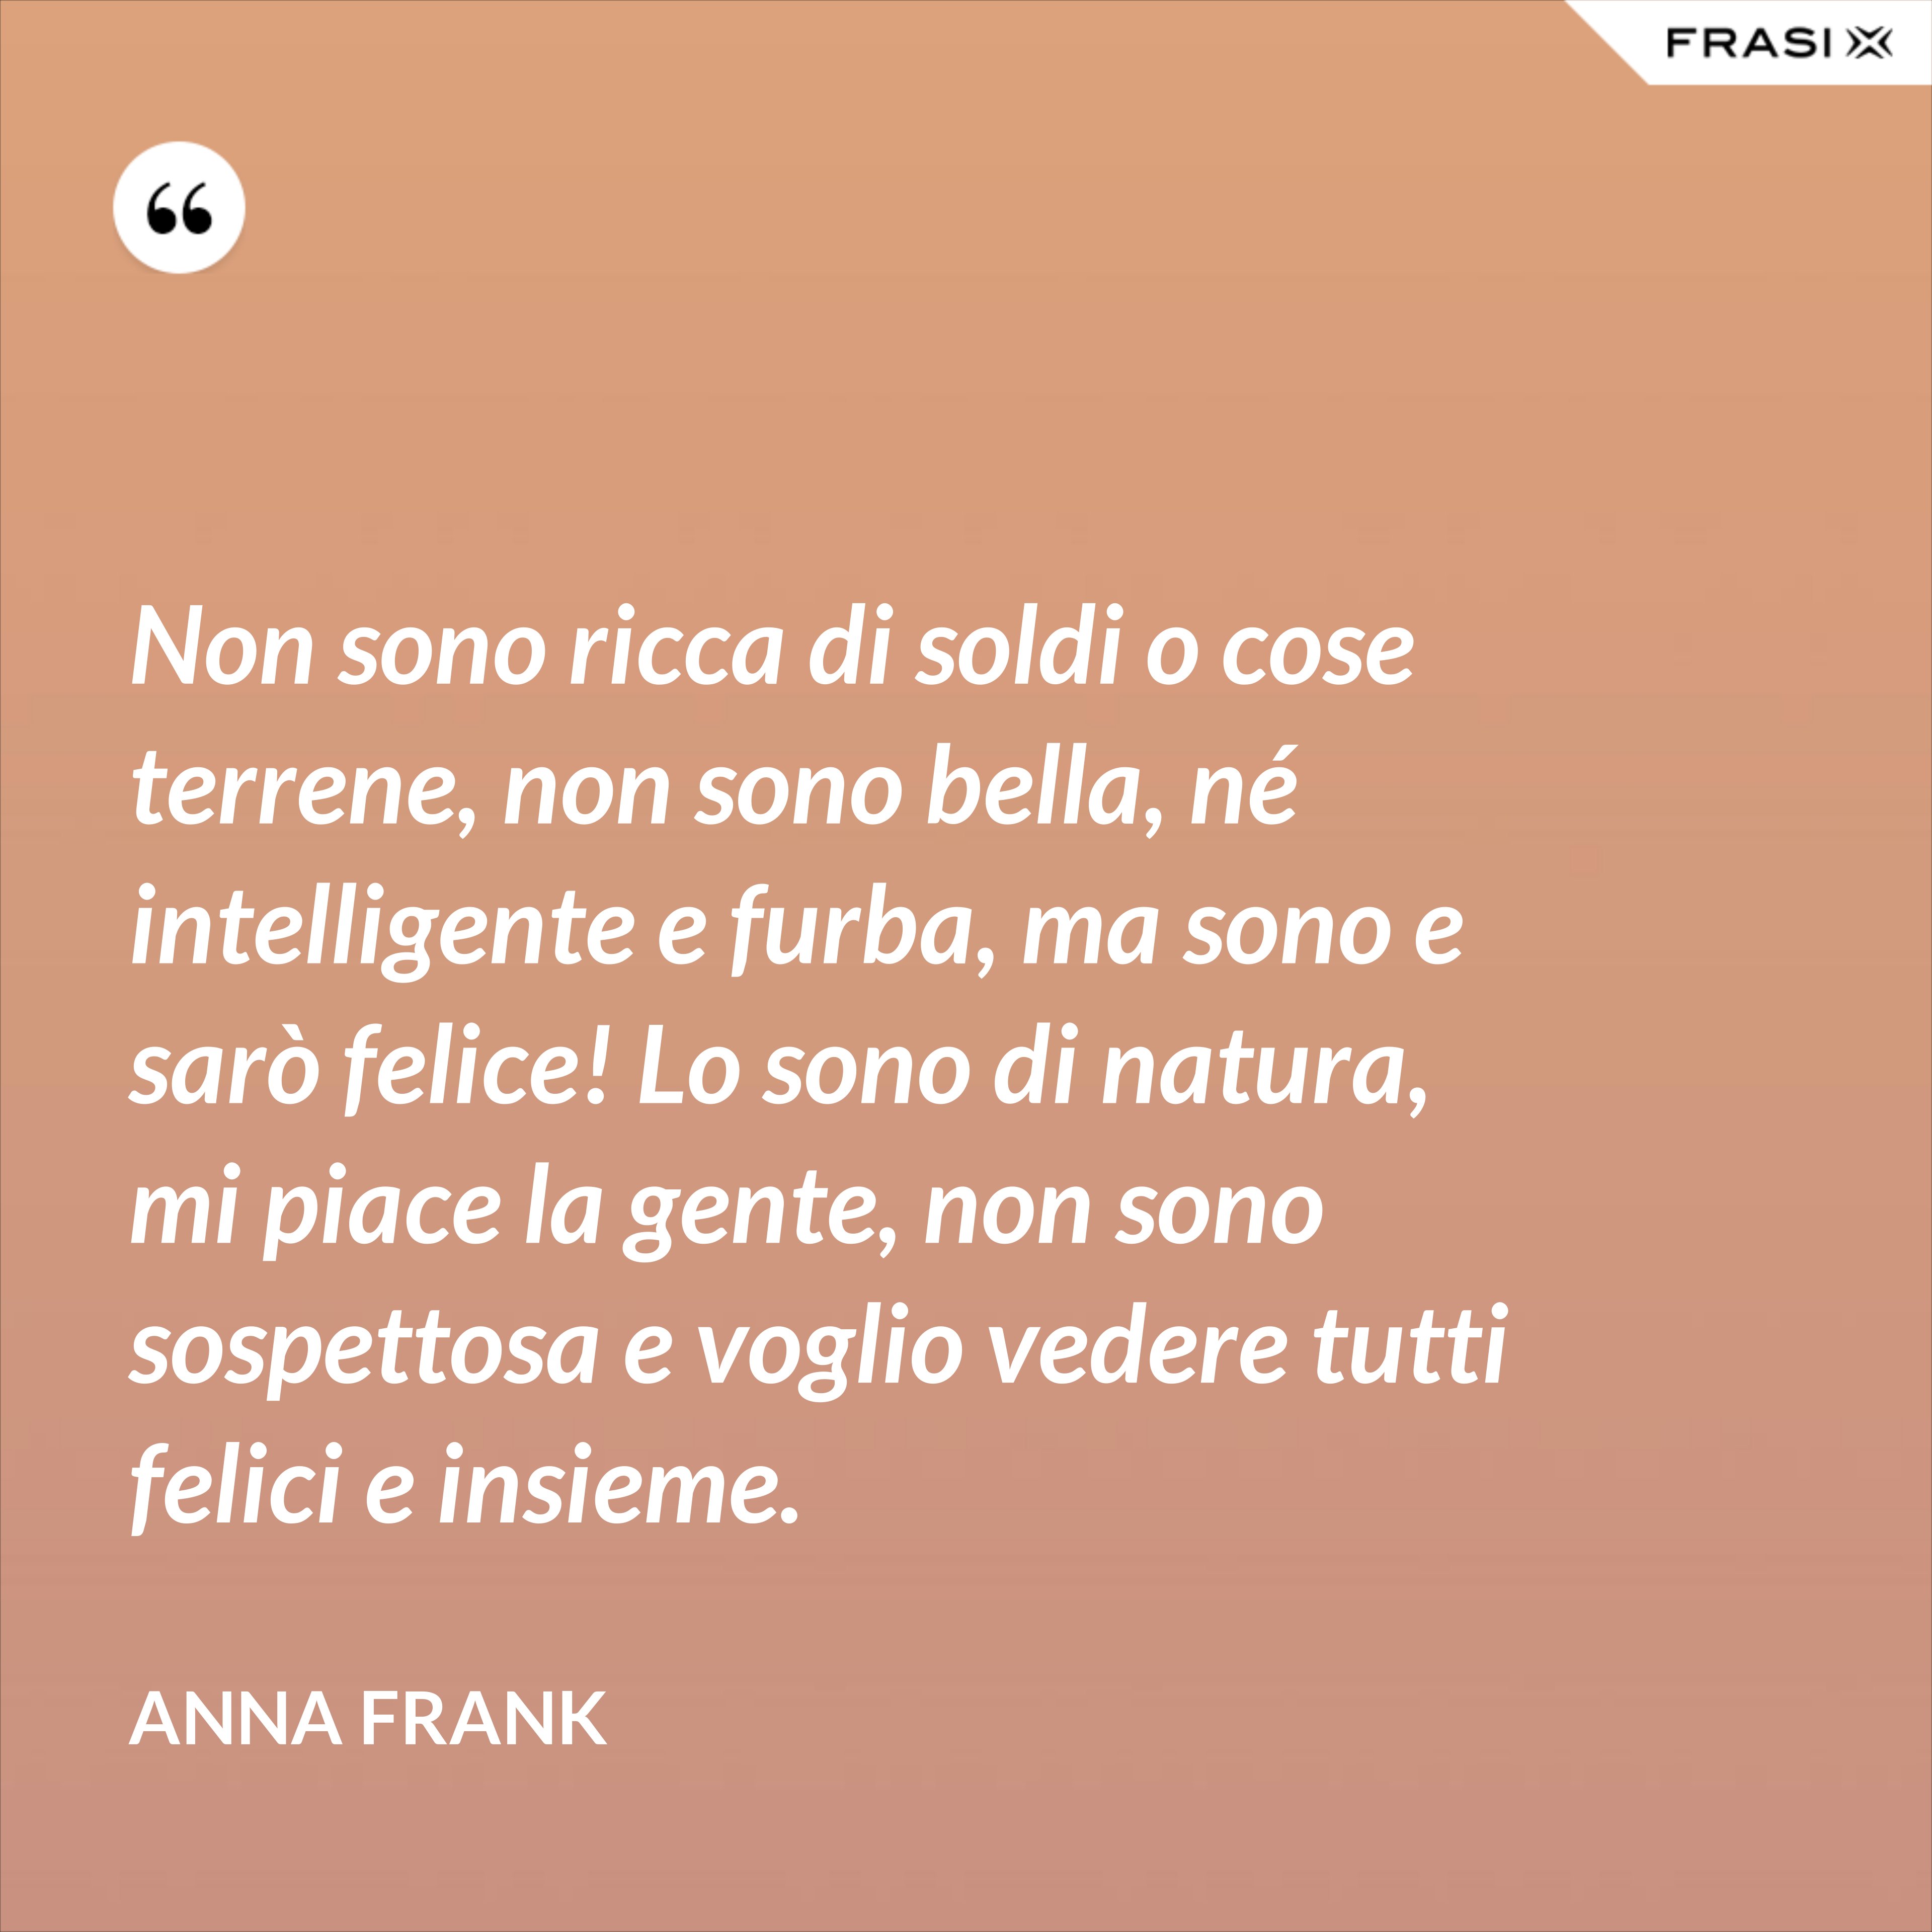 Non sono ricca di soldi o cose terrene, non sono bella, né intelligente e furba, ma sono e sarò felice! Lo sono di natura, mi piace la gente, non sono sospettosa e voglio vedere tutti felici e insieme. - Anna Frank